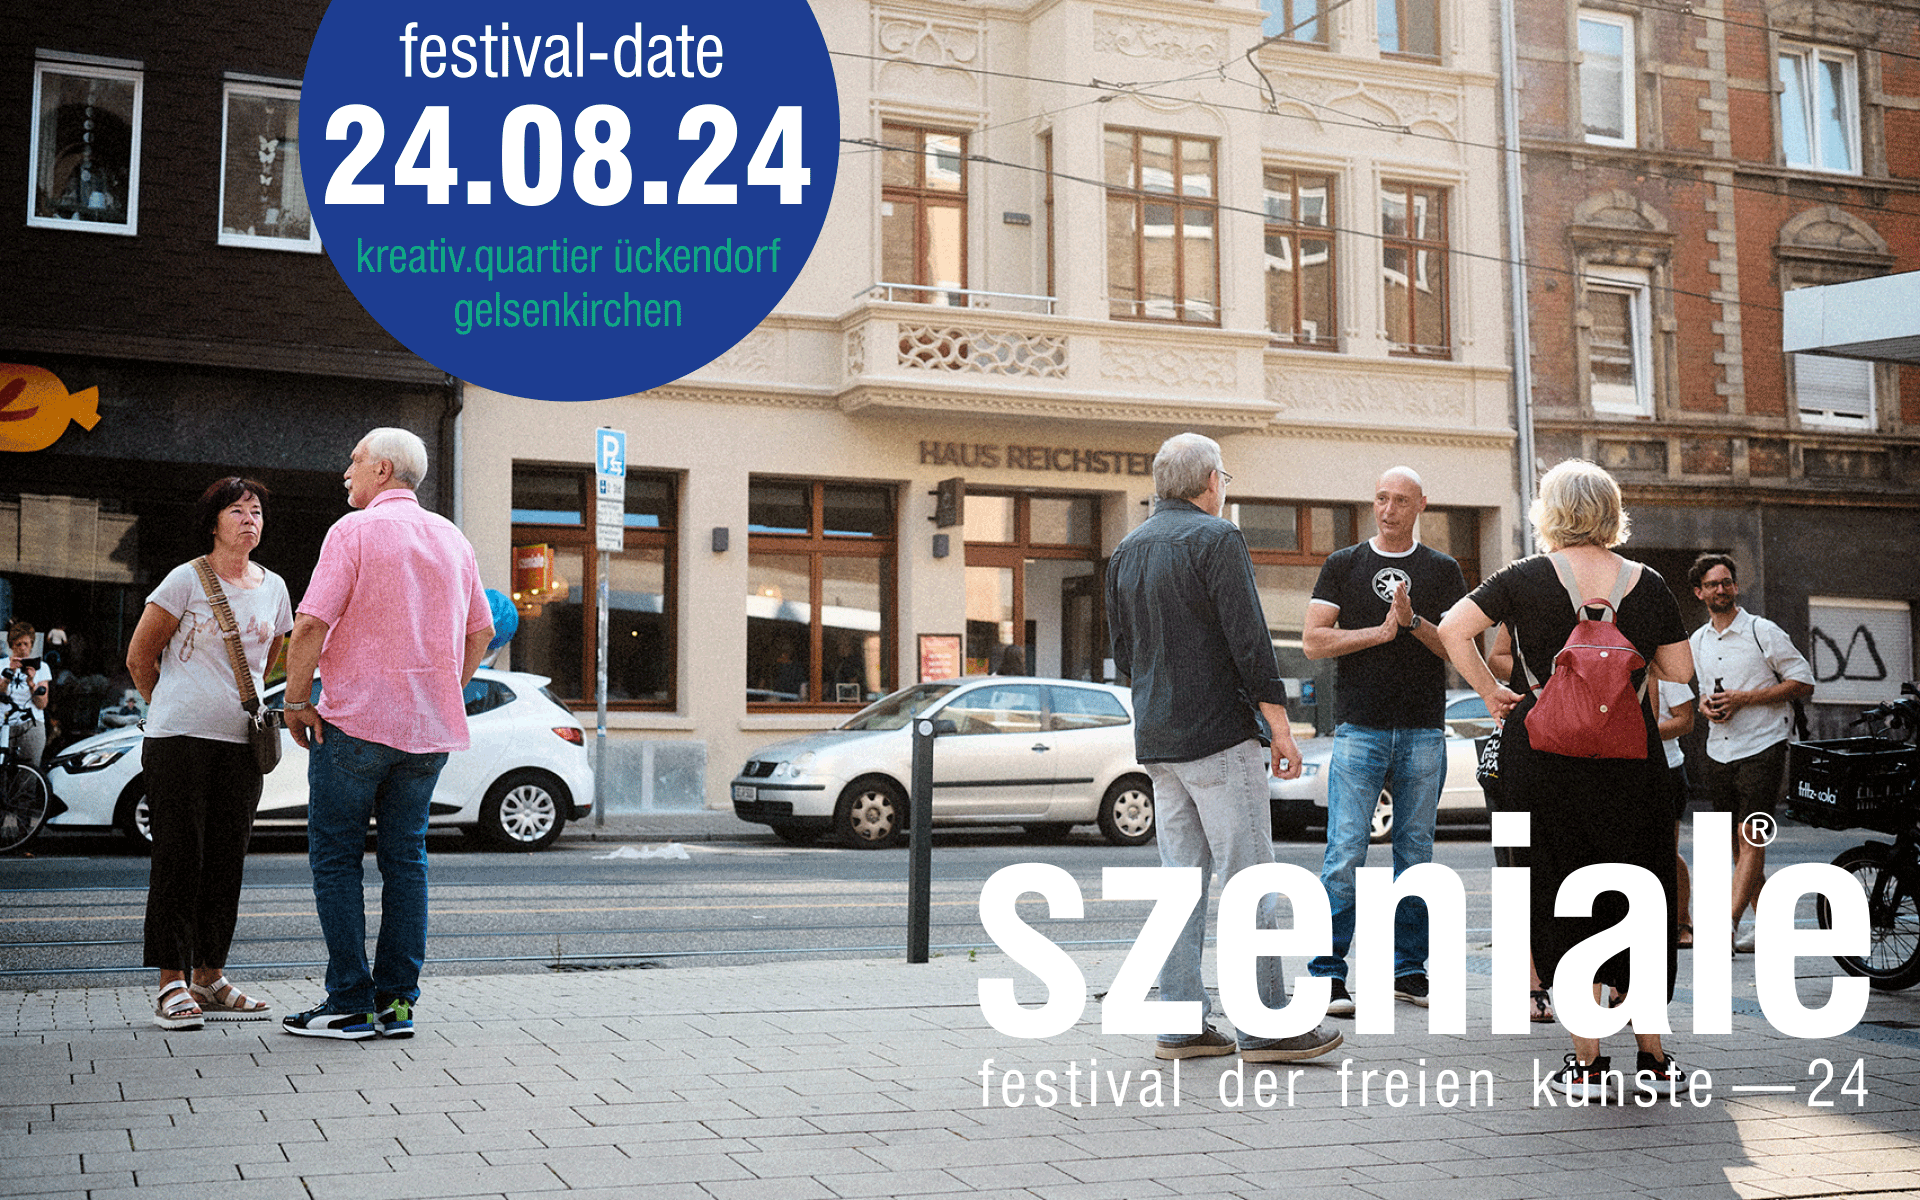 Festival-Szeniale_header-date24